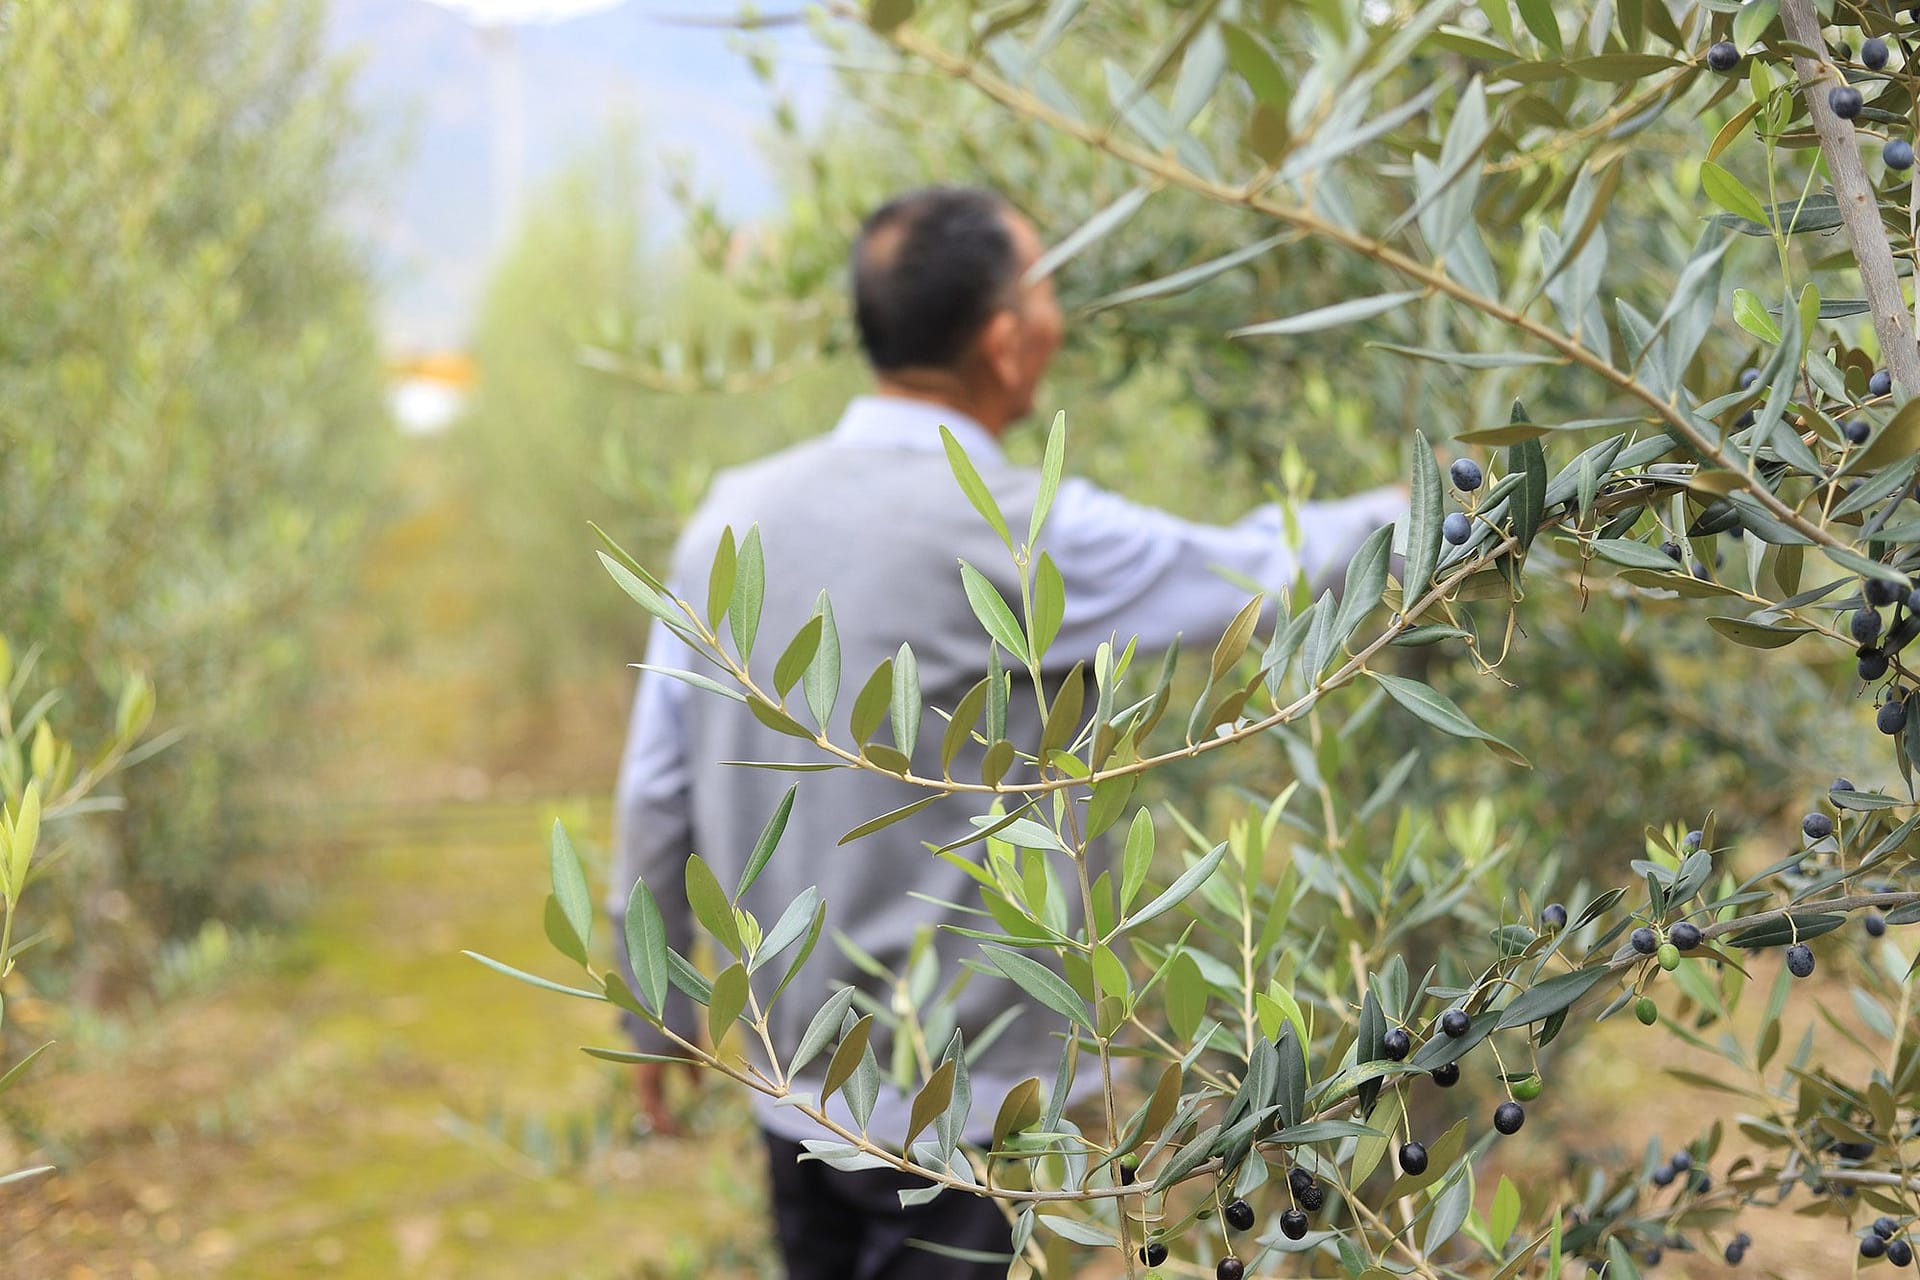 Asien-Profile-das-beste-Olivenöl-Produktionsprojekt-zeigt-das-Potenzial-des-chinesischen-Olivenölsektors-Olivenöl-Zeiten